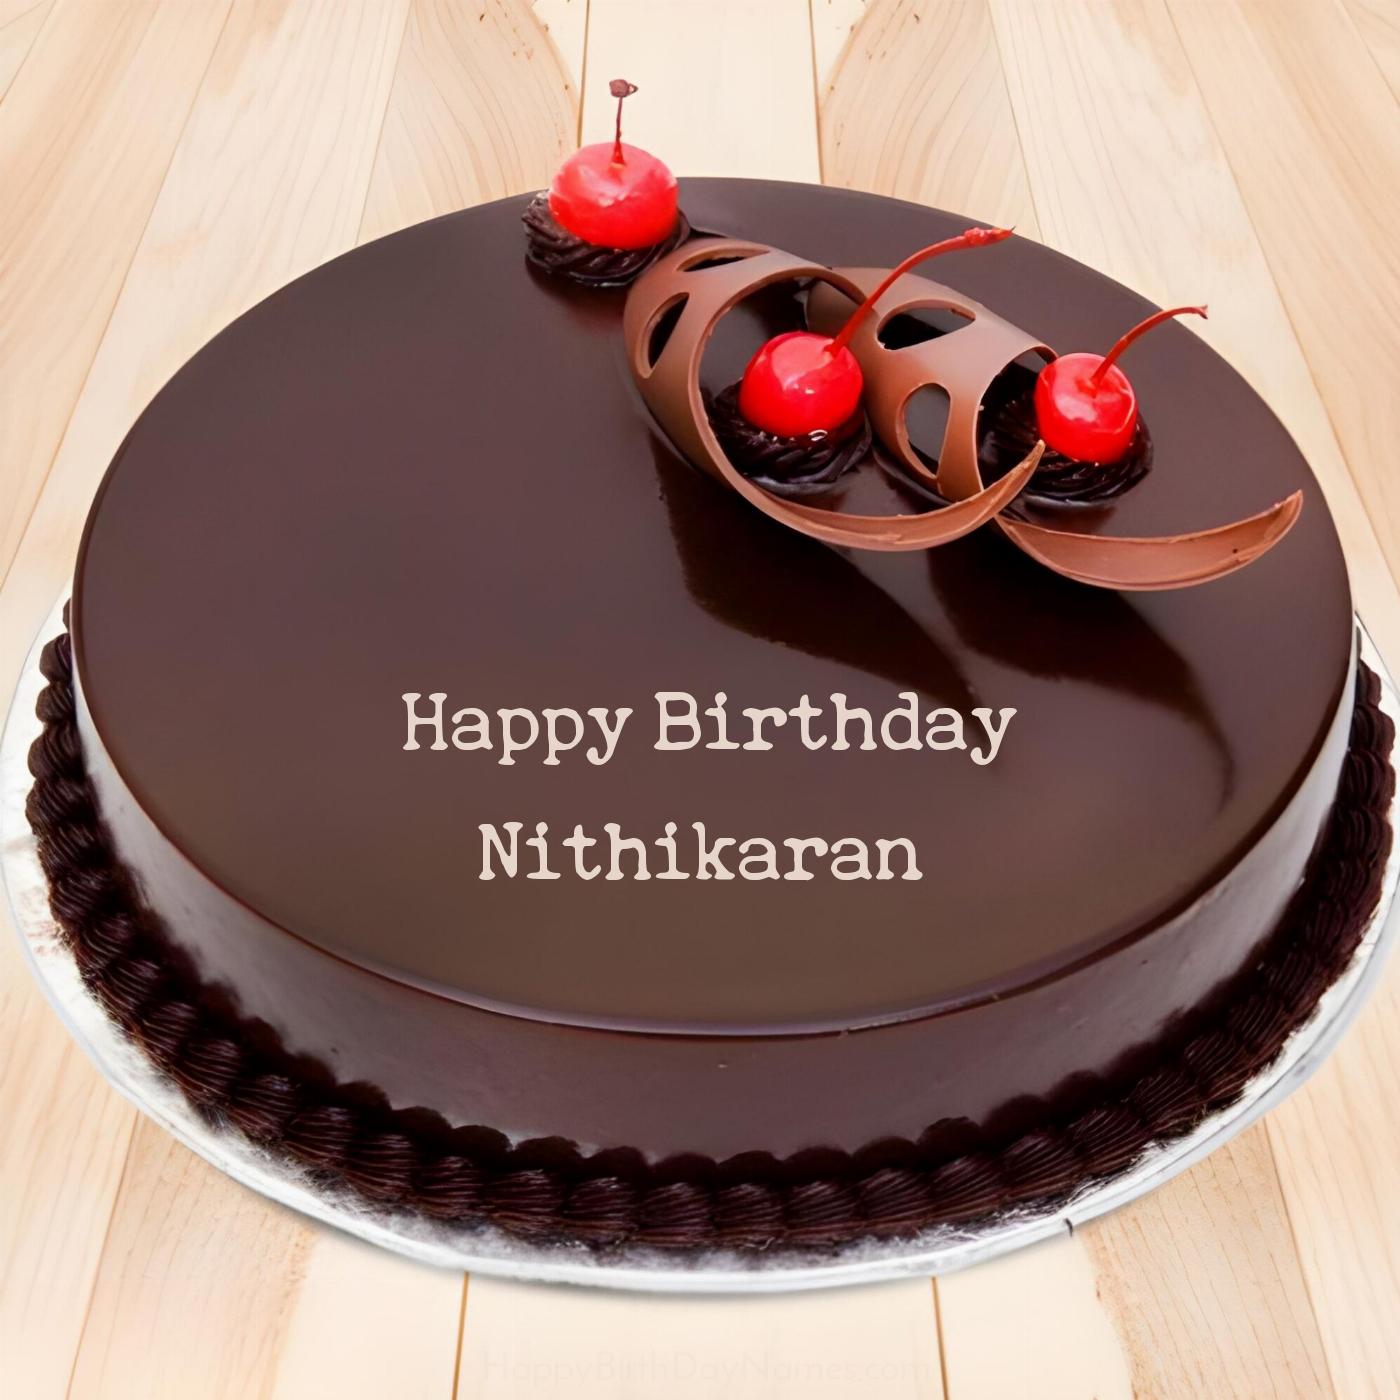 Happy Birthday Nithikaran Chocolate Cherry Cake